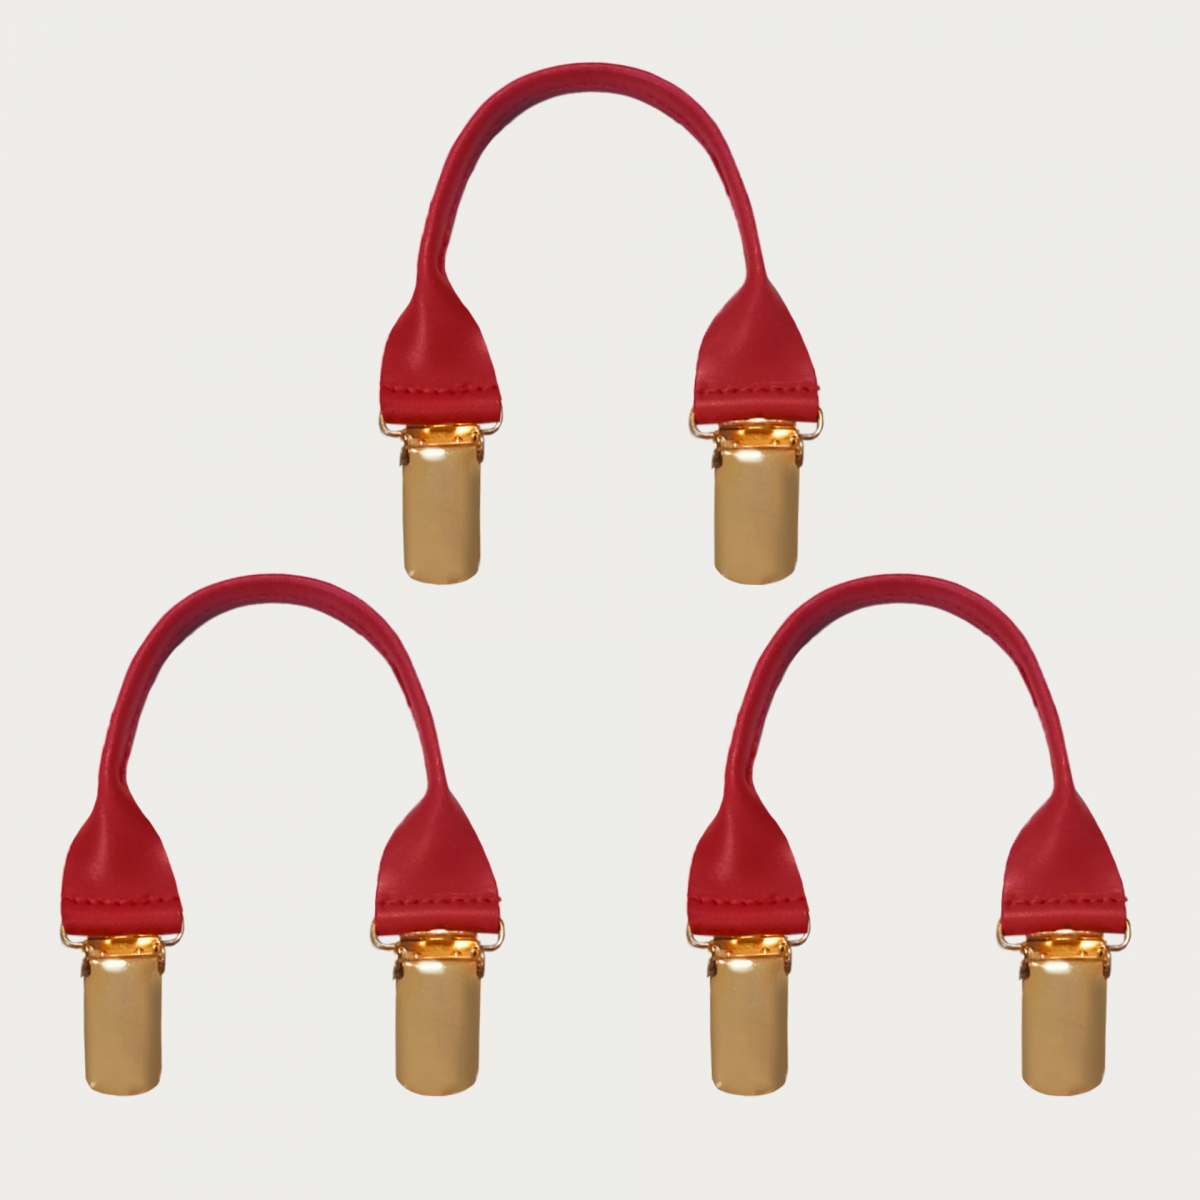 BRUCLE Connecteurs en cuir avec clips dorés, 3 pcs., rouge